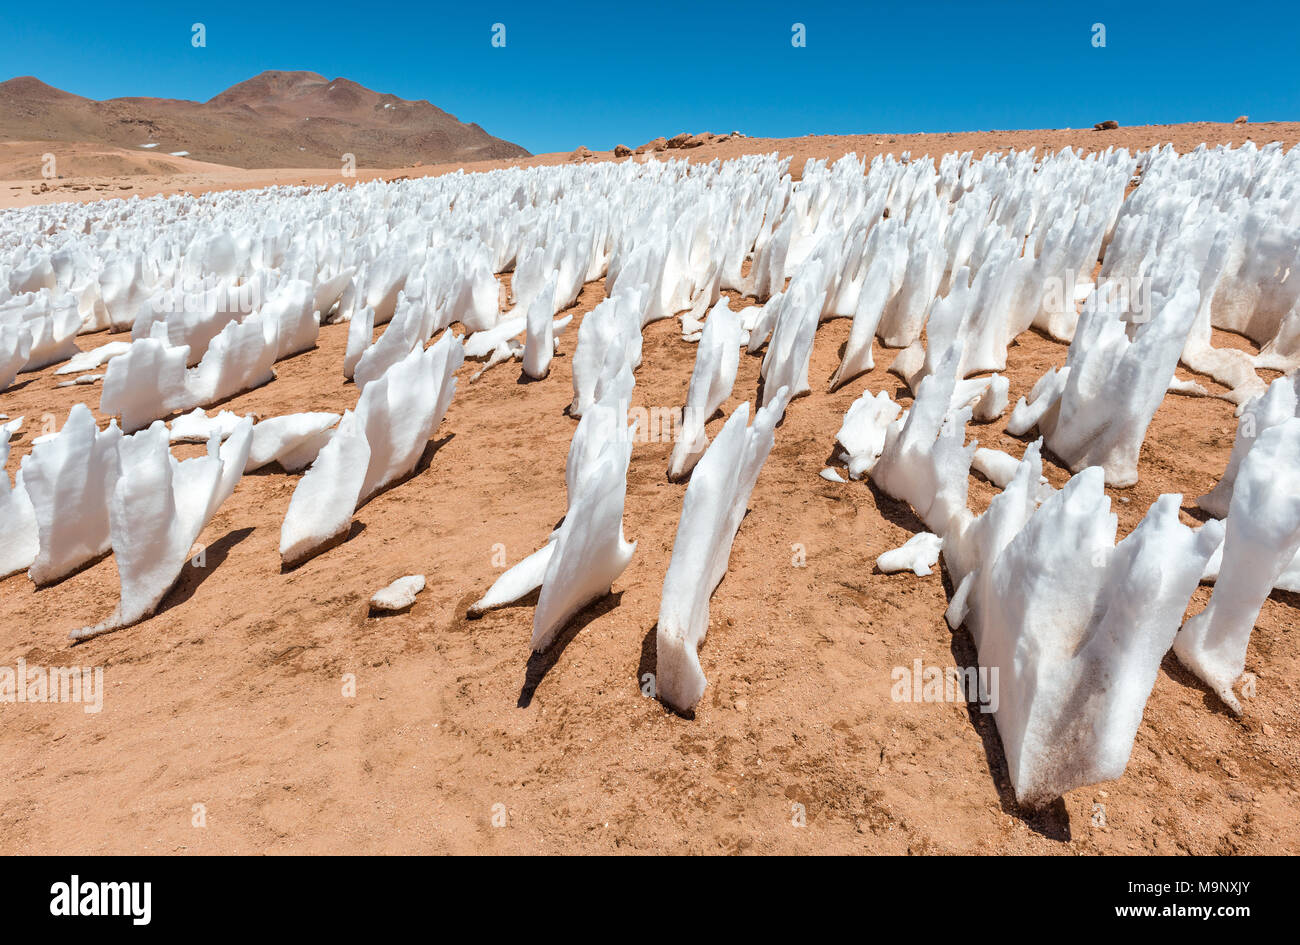 Formaciones de hielo debido a la erosión por el viento en el desierto de Siloli situada entre el desierto de Atacama en Chile y el Salar de Uyuni, Bolivia, América del Sur. Foto de stock